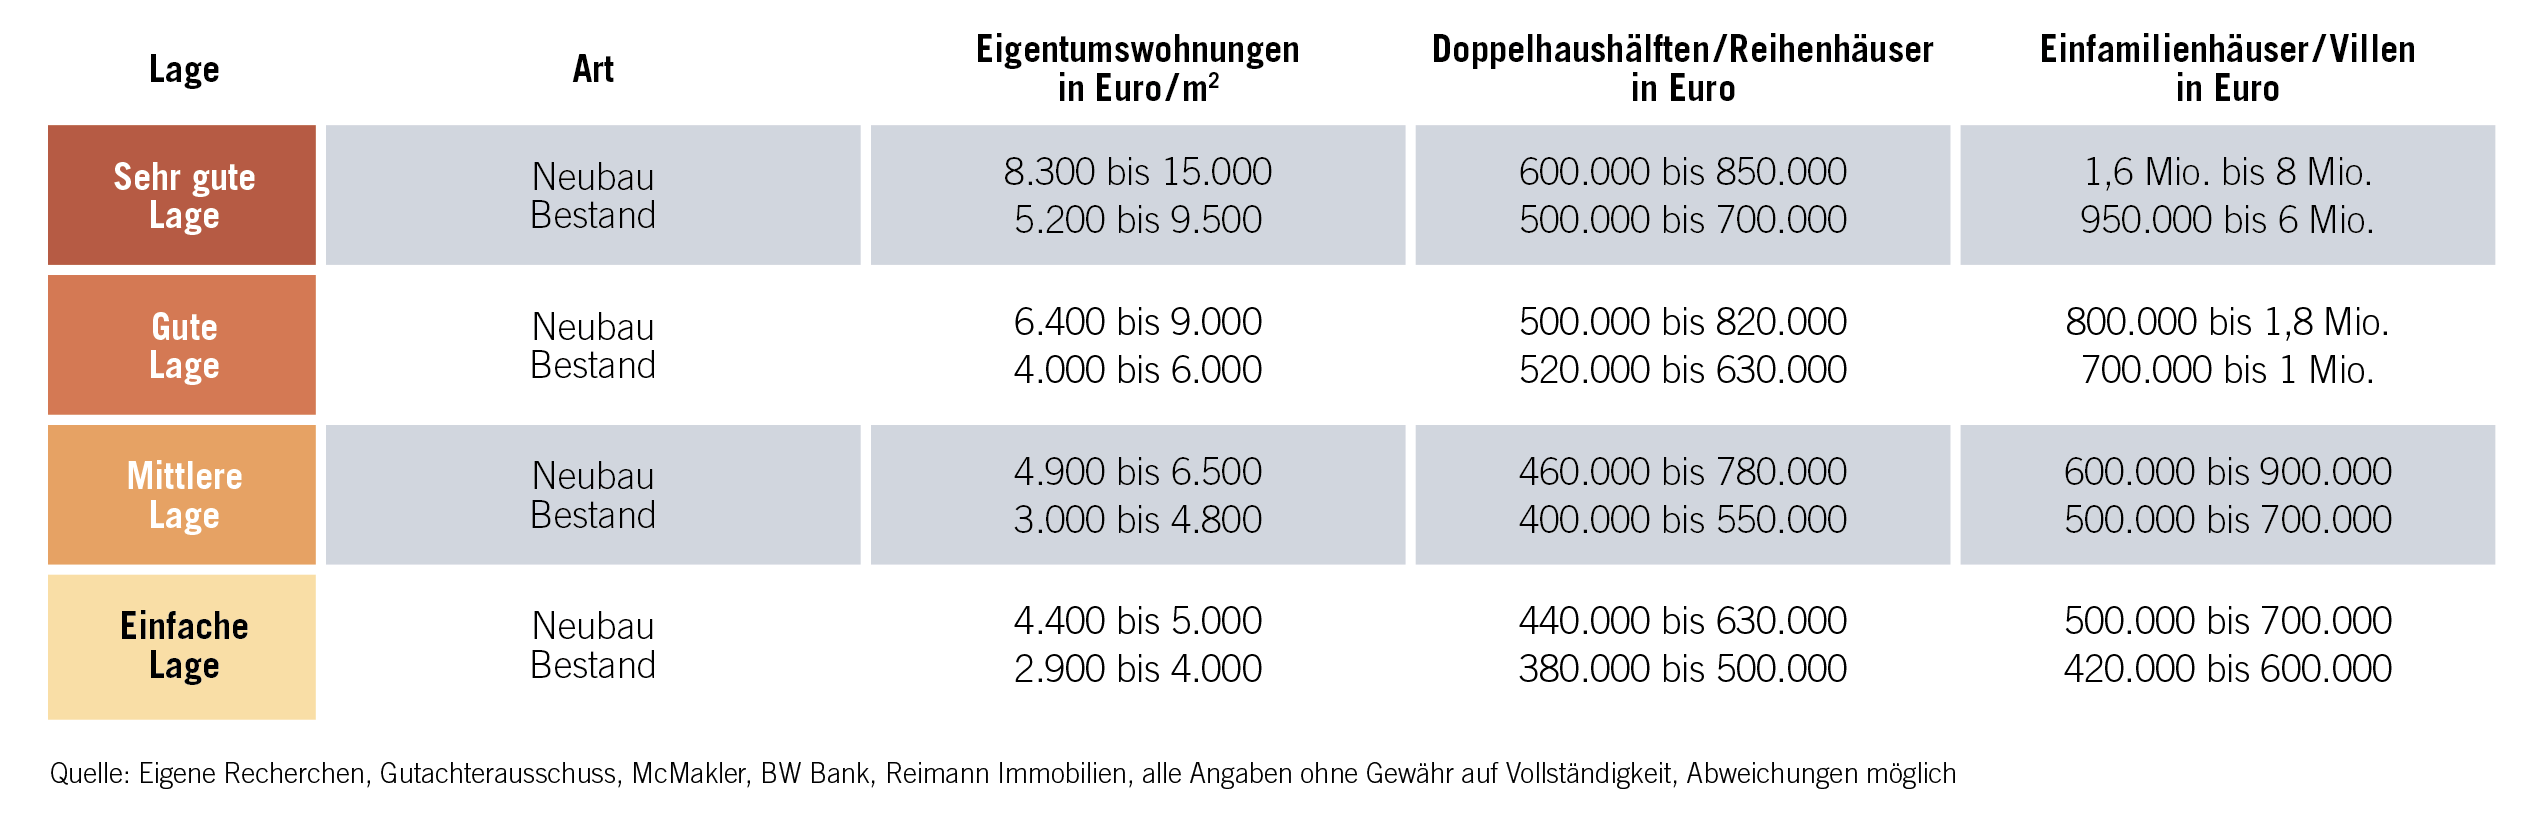 Tabelle Lagen Bodensee Bodensee_Lagen.jpg